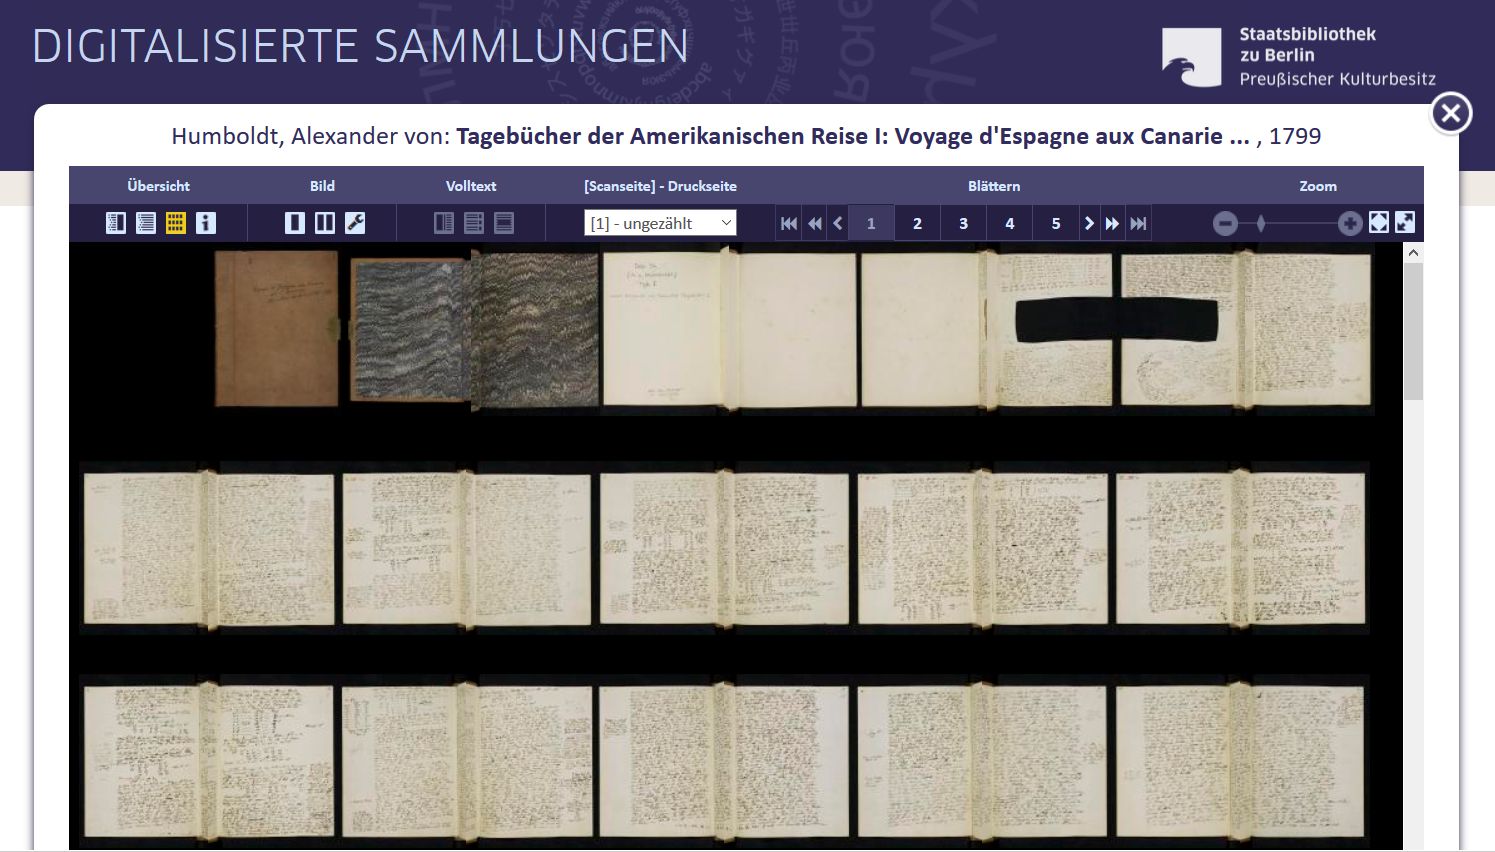 Imagen de la web con los diaros de Humboldt de la Biblioteca de la Universidad Estatal de Berllín